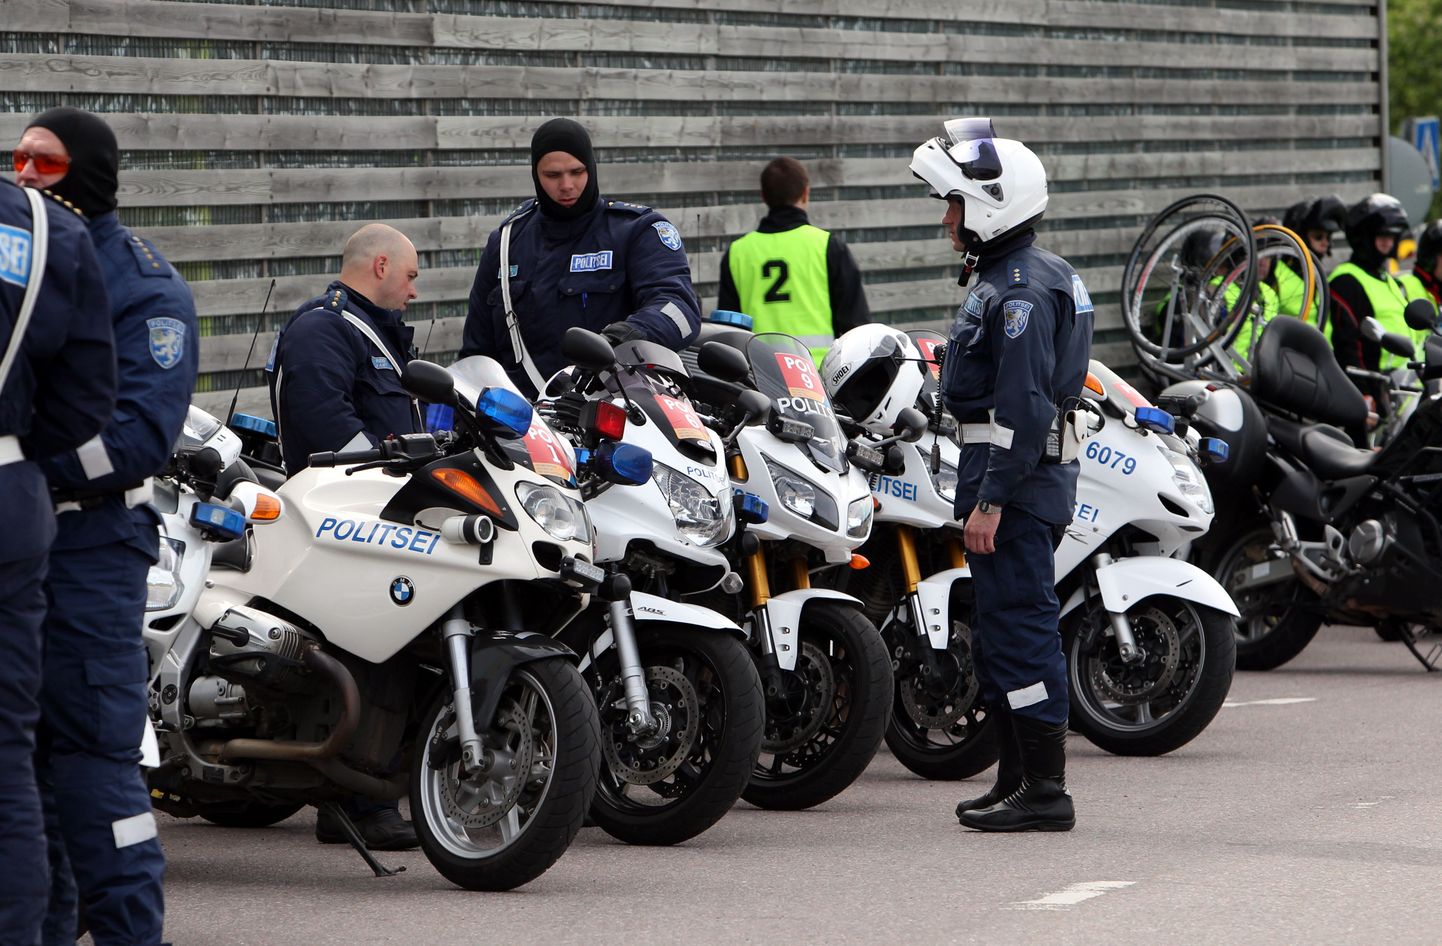 Полицейские, работающие на мотоциклах. Иллюстративное фото.